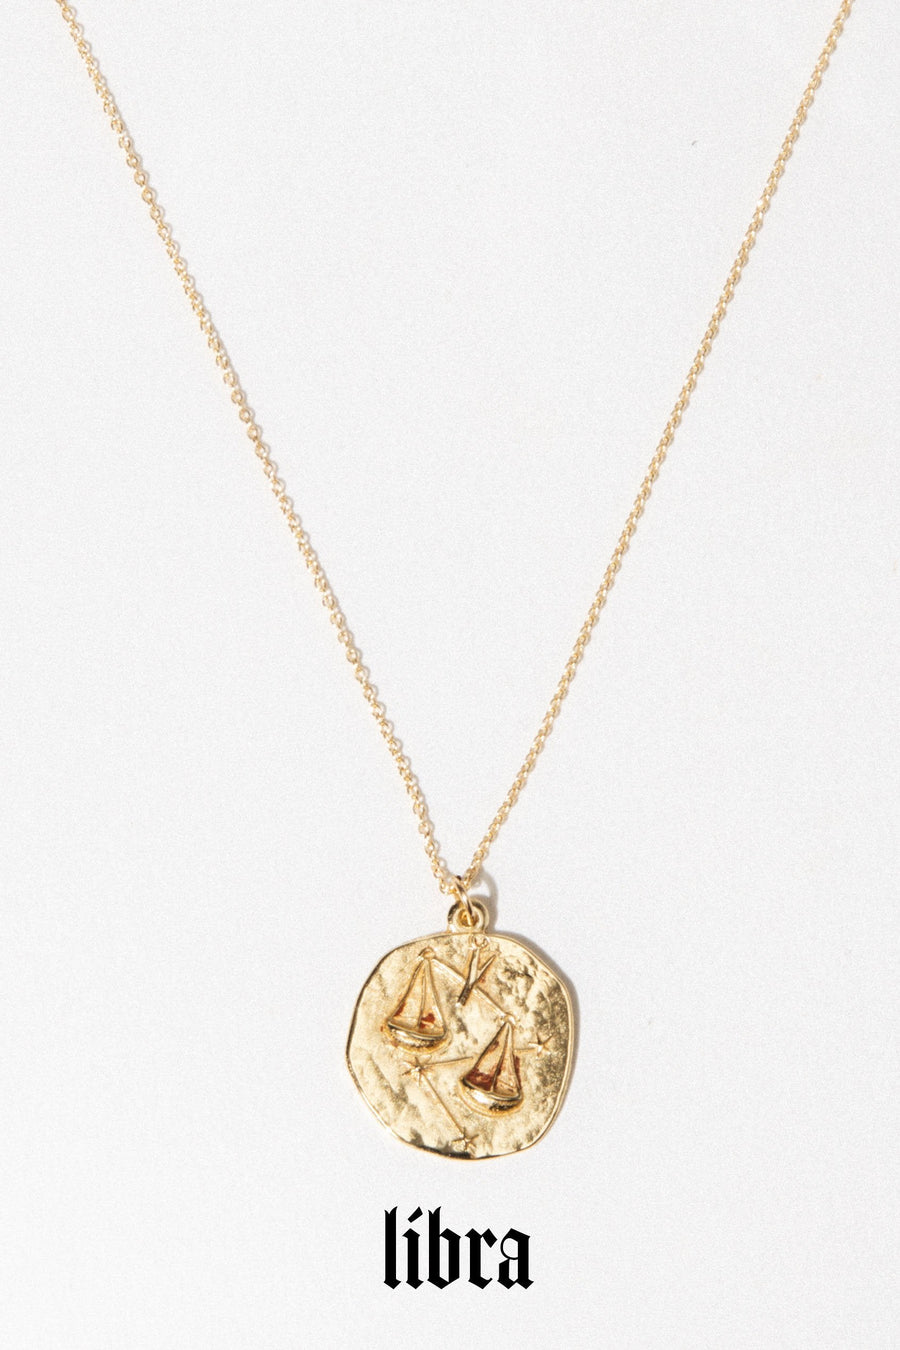 Studio Grun Jewelry Libra / Gold / 20 inches Zodiac Necklace